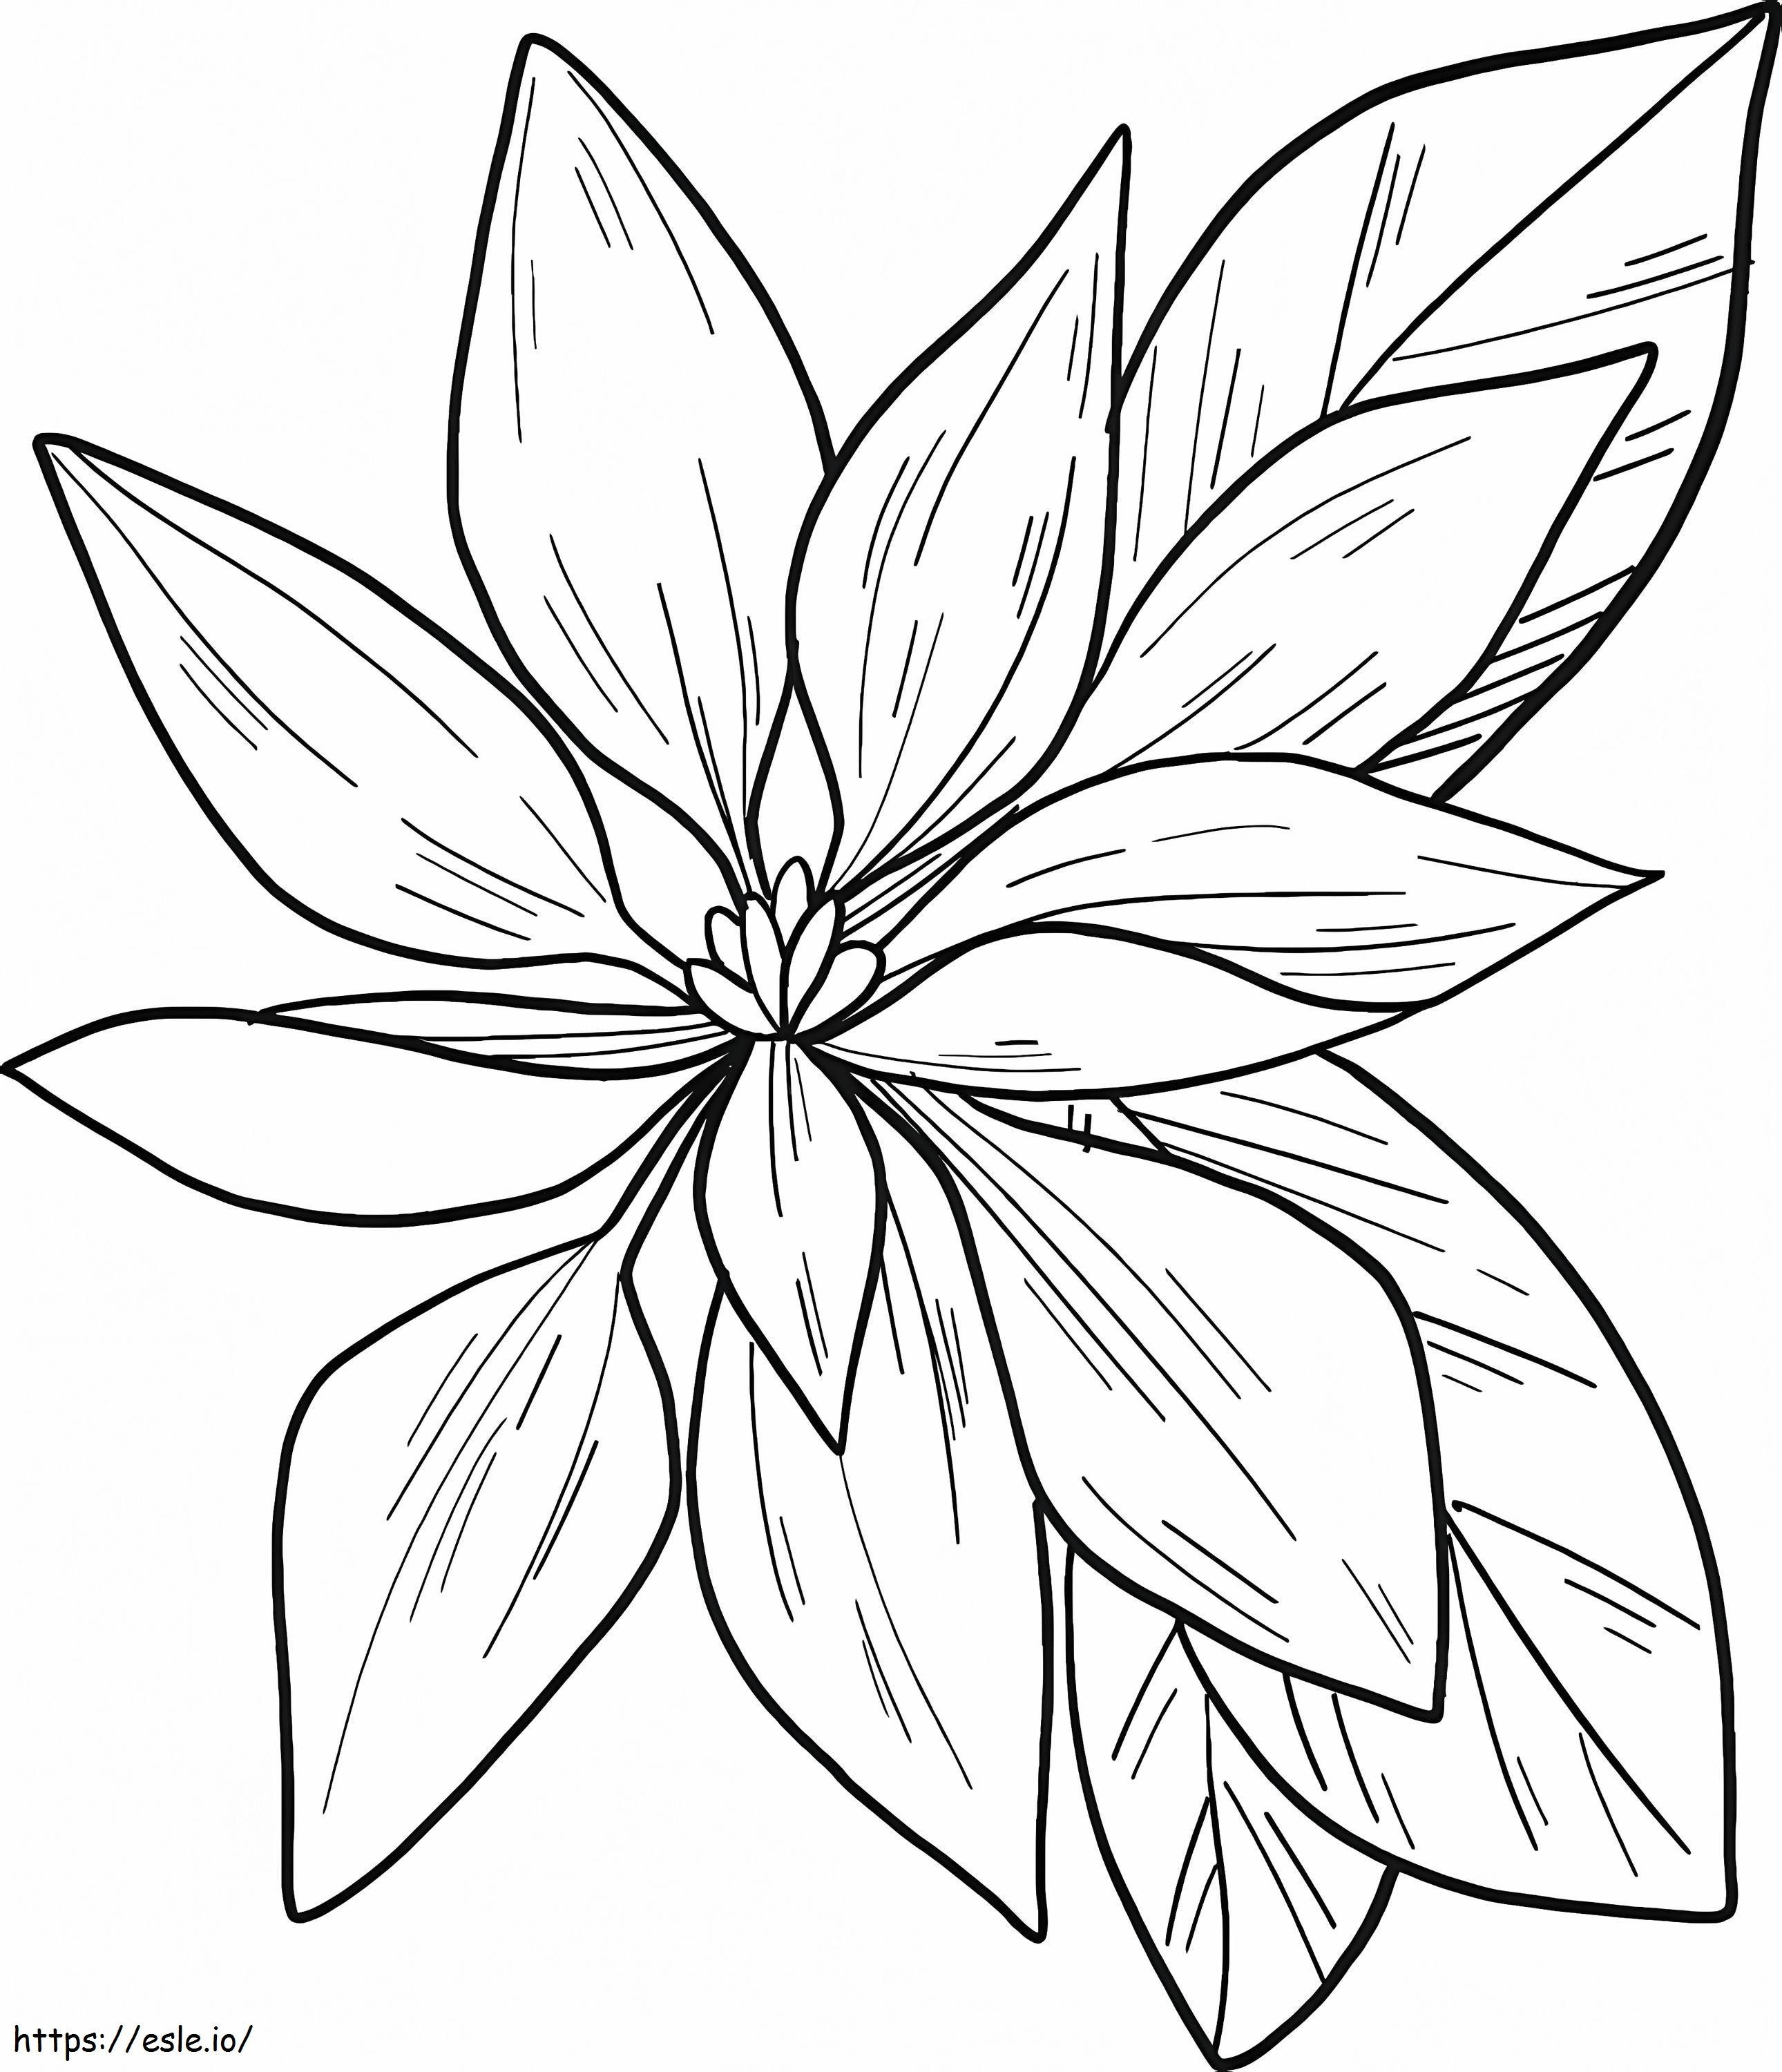 Coloriage Fleur de poinsettia gratuite à imprimer dessin